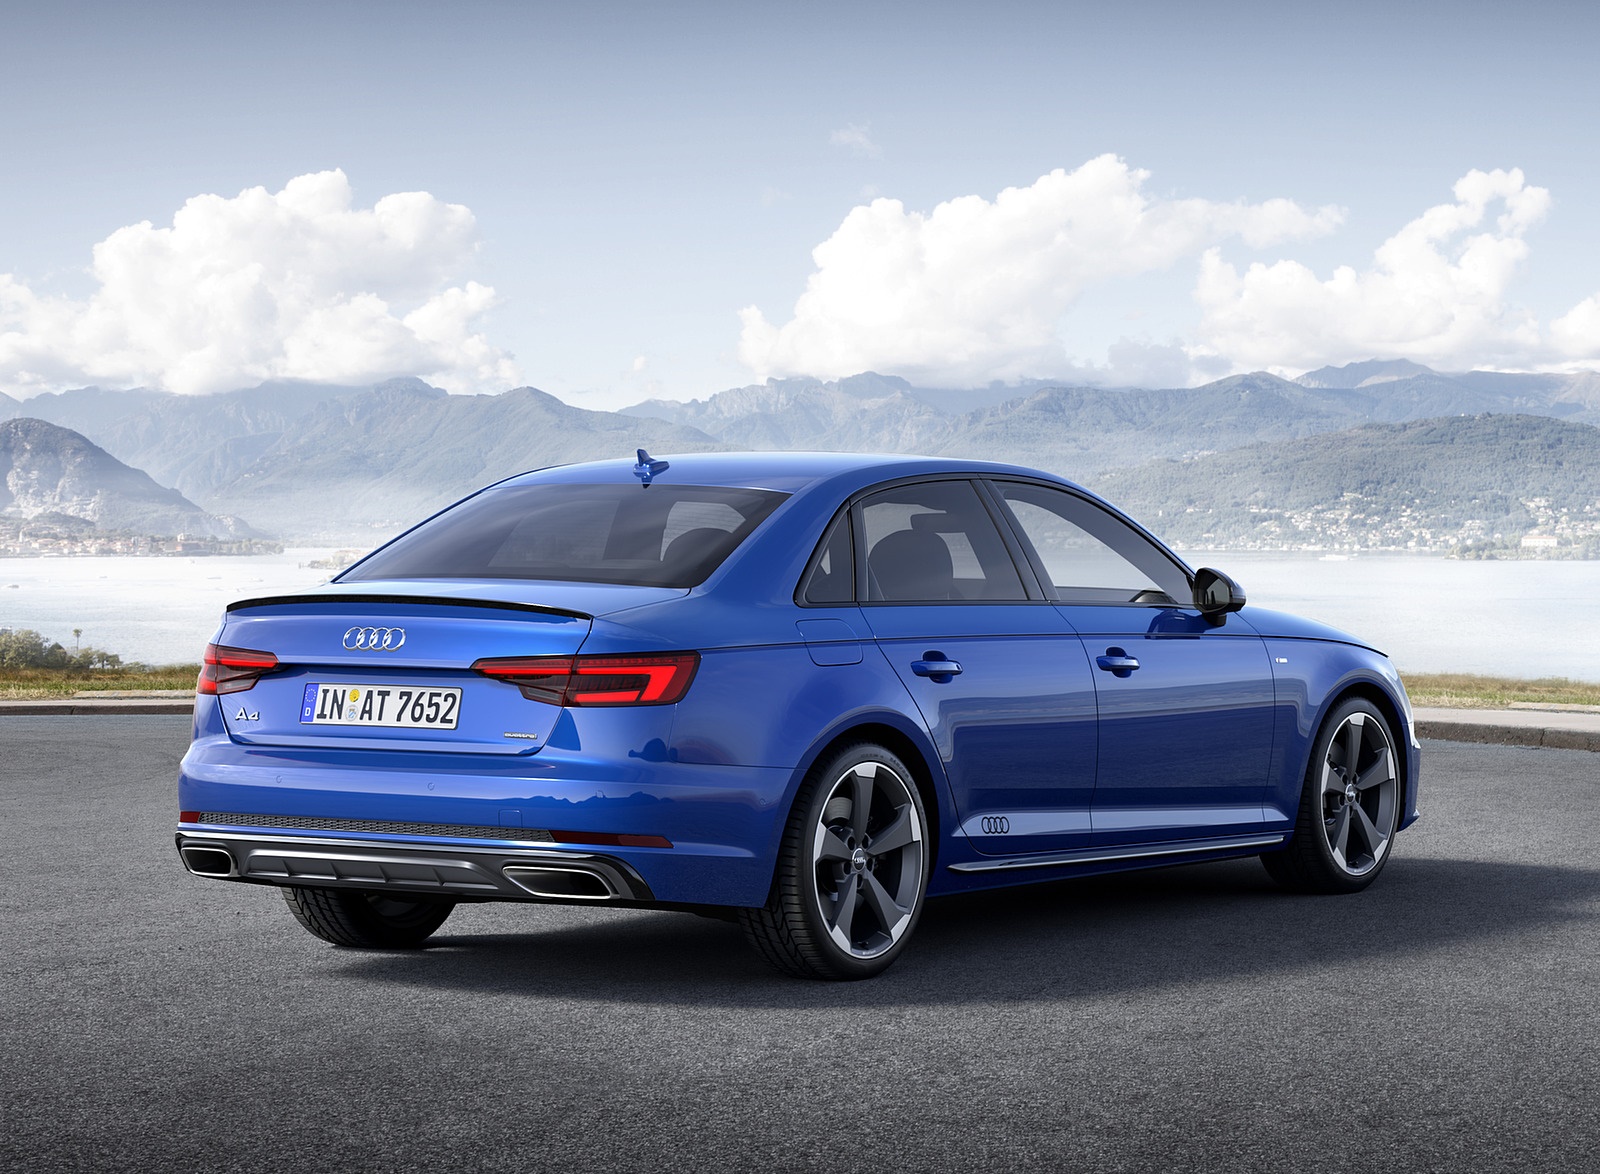 2019 Audi A4 (Color: Ascari Blue) Rear Three-Quarter Wallpapers #32 of 35